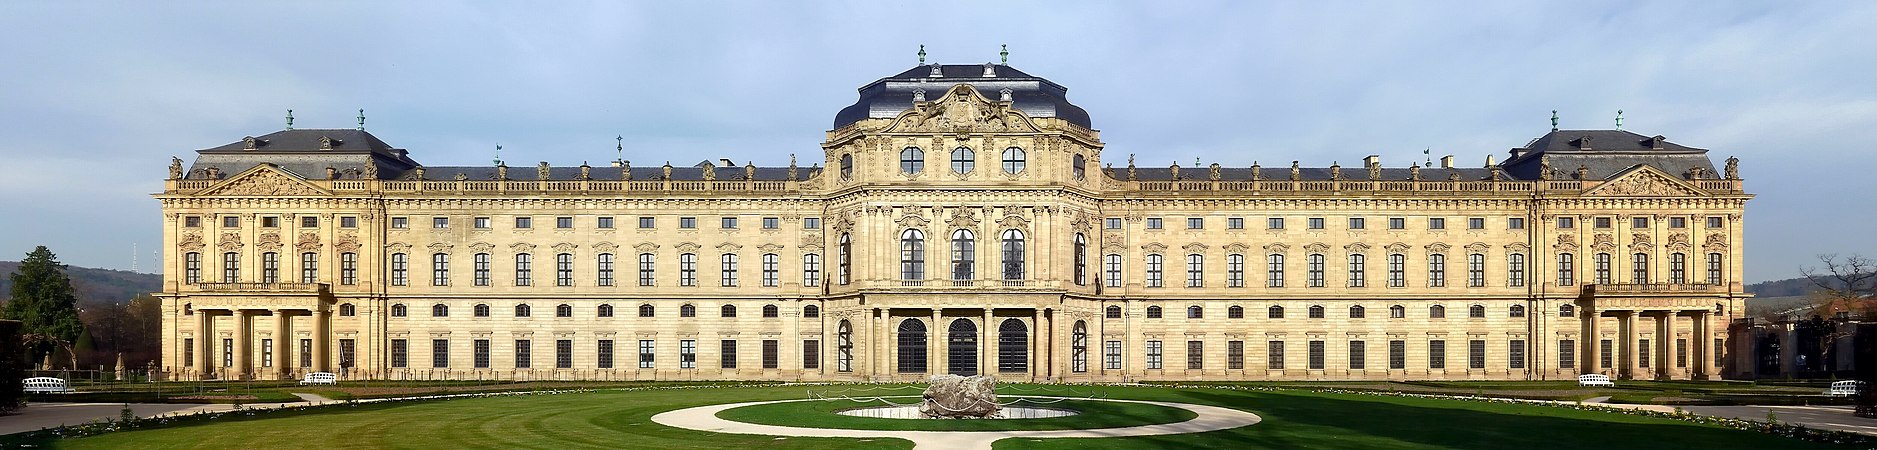 Würzburg Residence, by Rainer Lippert